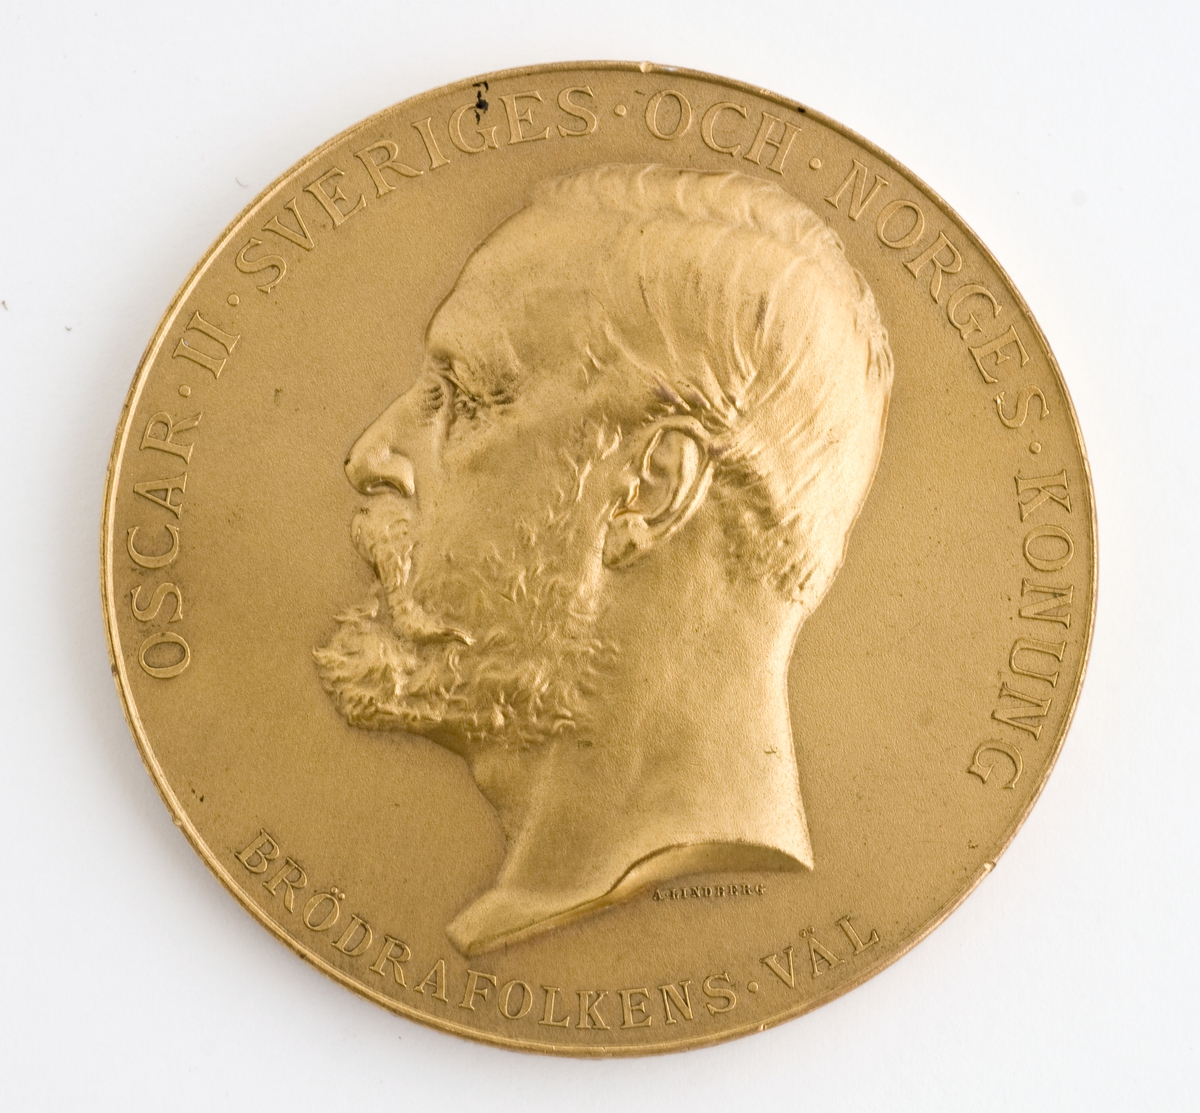 Rund medalje i etui. Kong Oscar IIs portrett i profil og hans valgspråk "BRÖDRAFOLKENS VÄL".